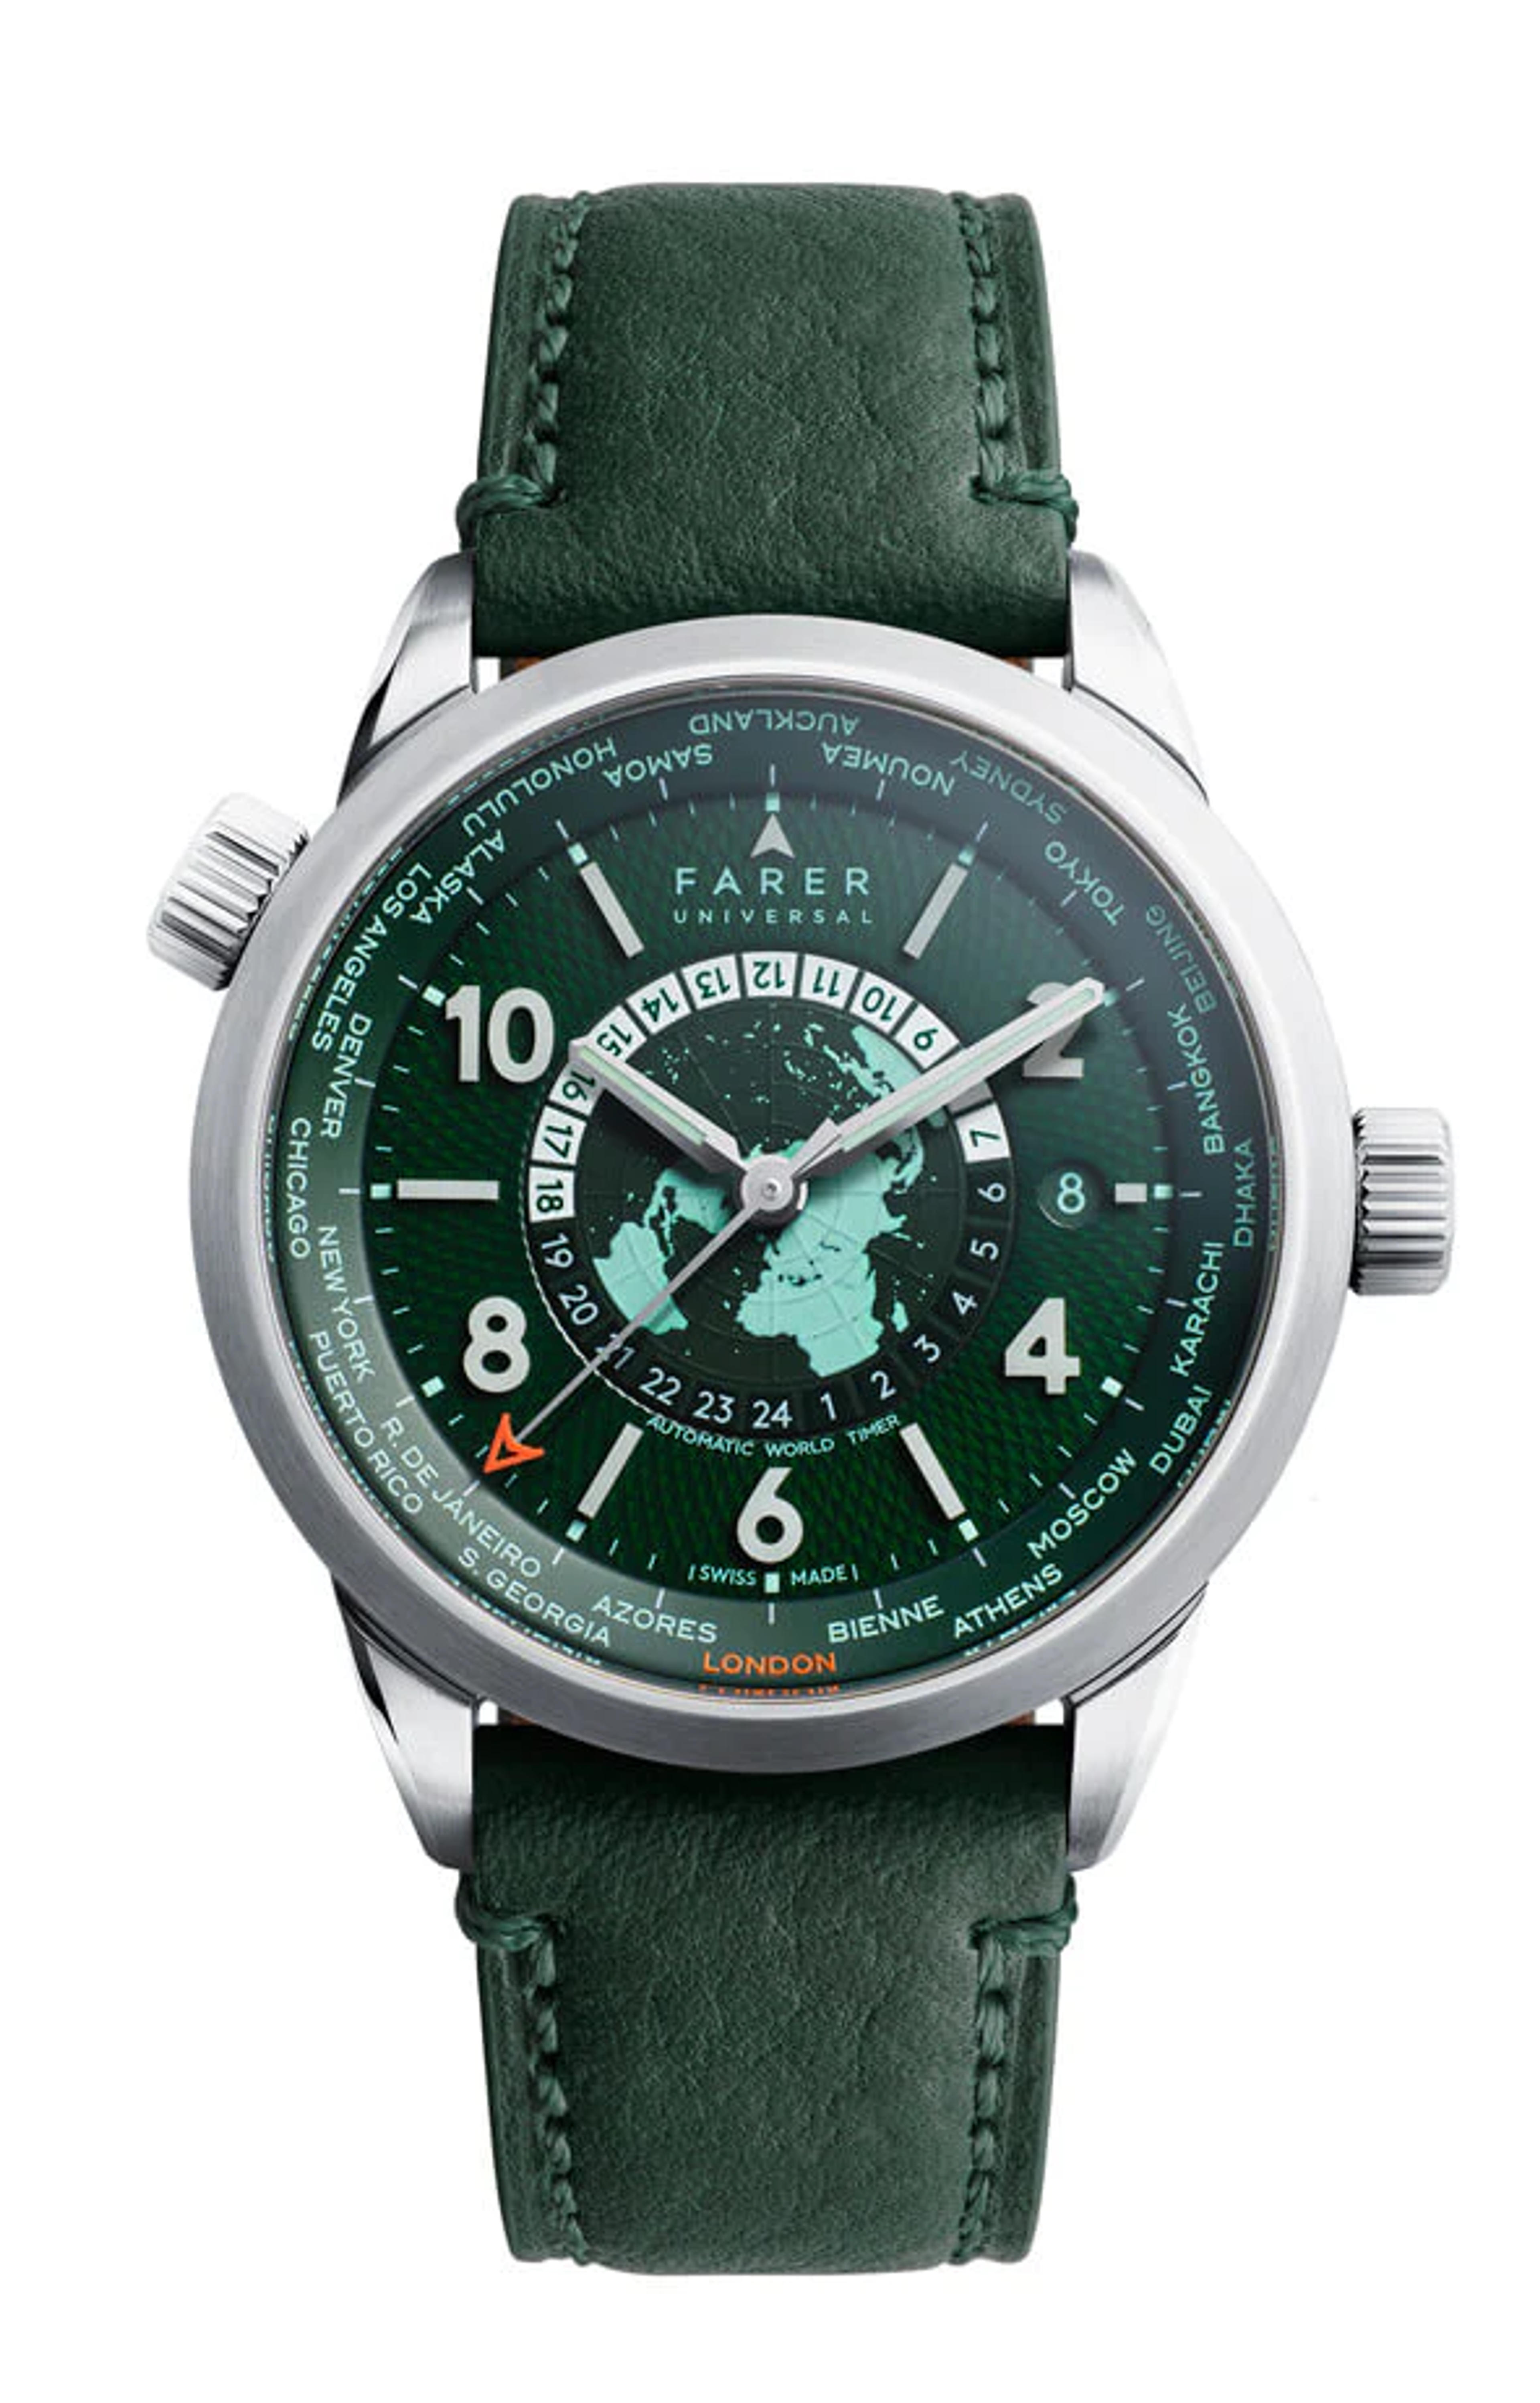 Farer Automatic Watches - Foxe - Sellita SW330-1 Elaboré Movement – Farer USD